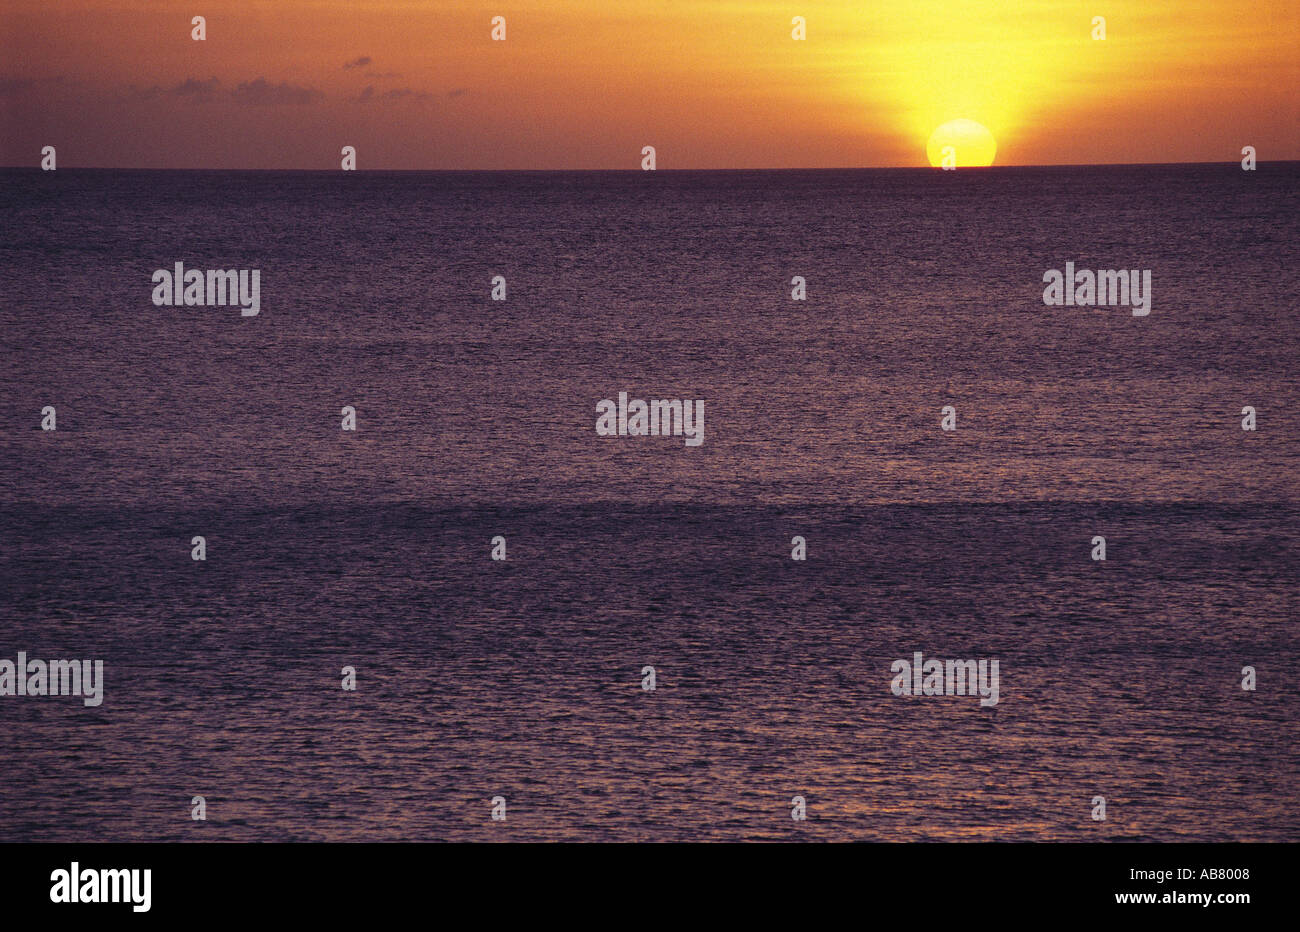 Sun setting over the sea Stock Photo